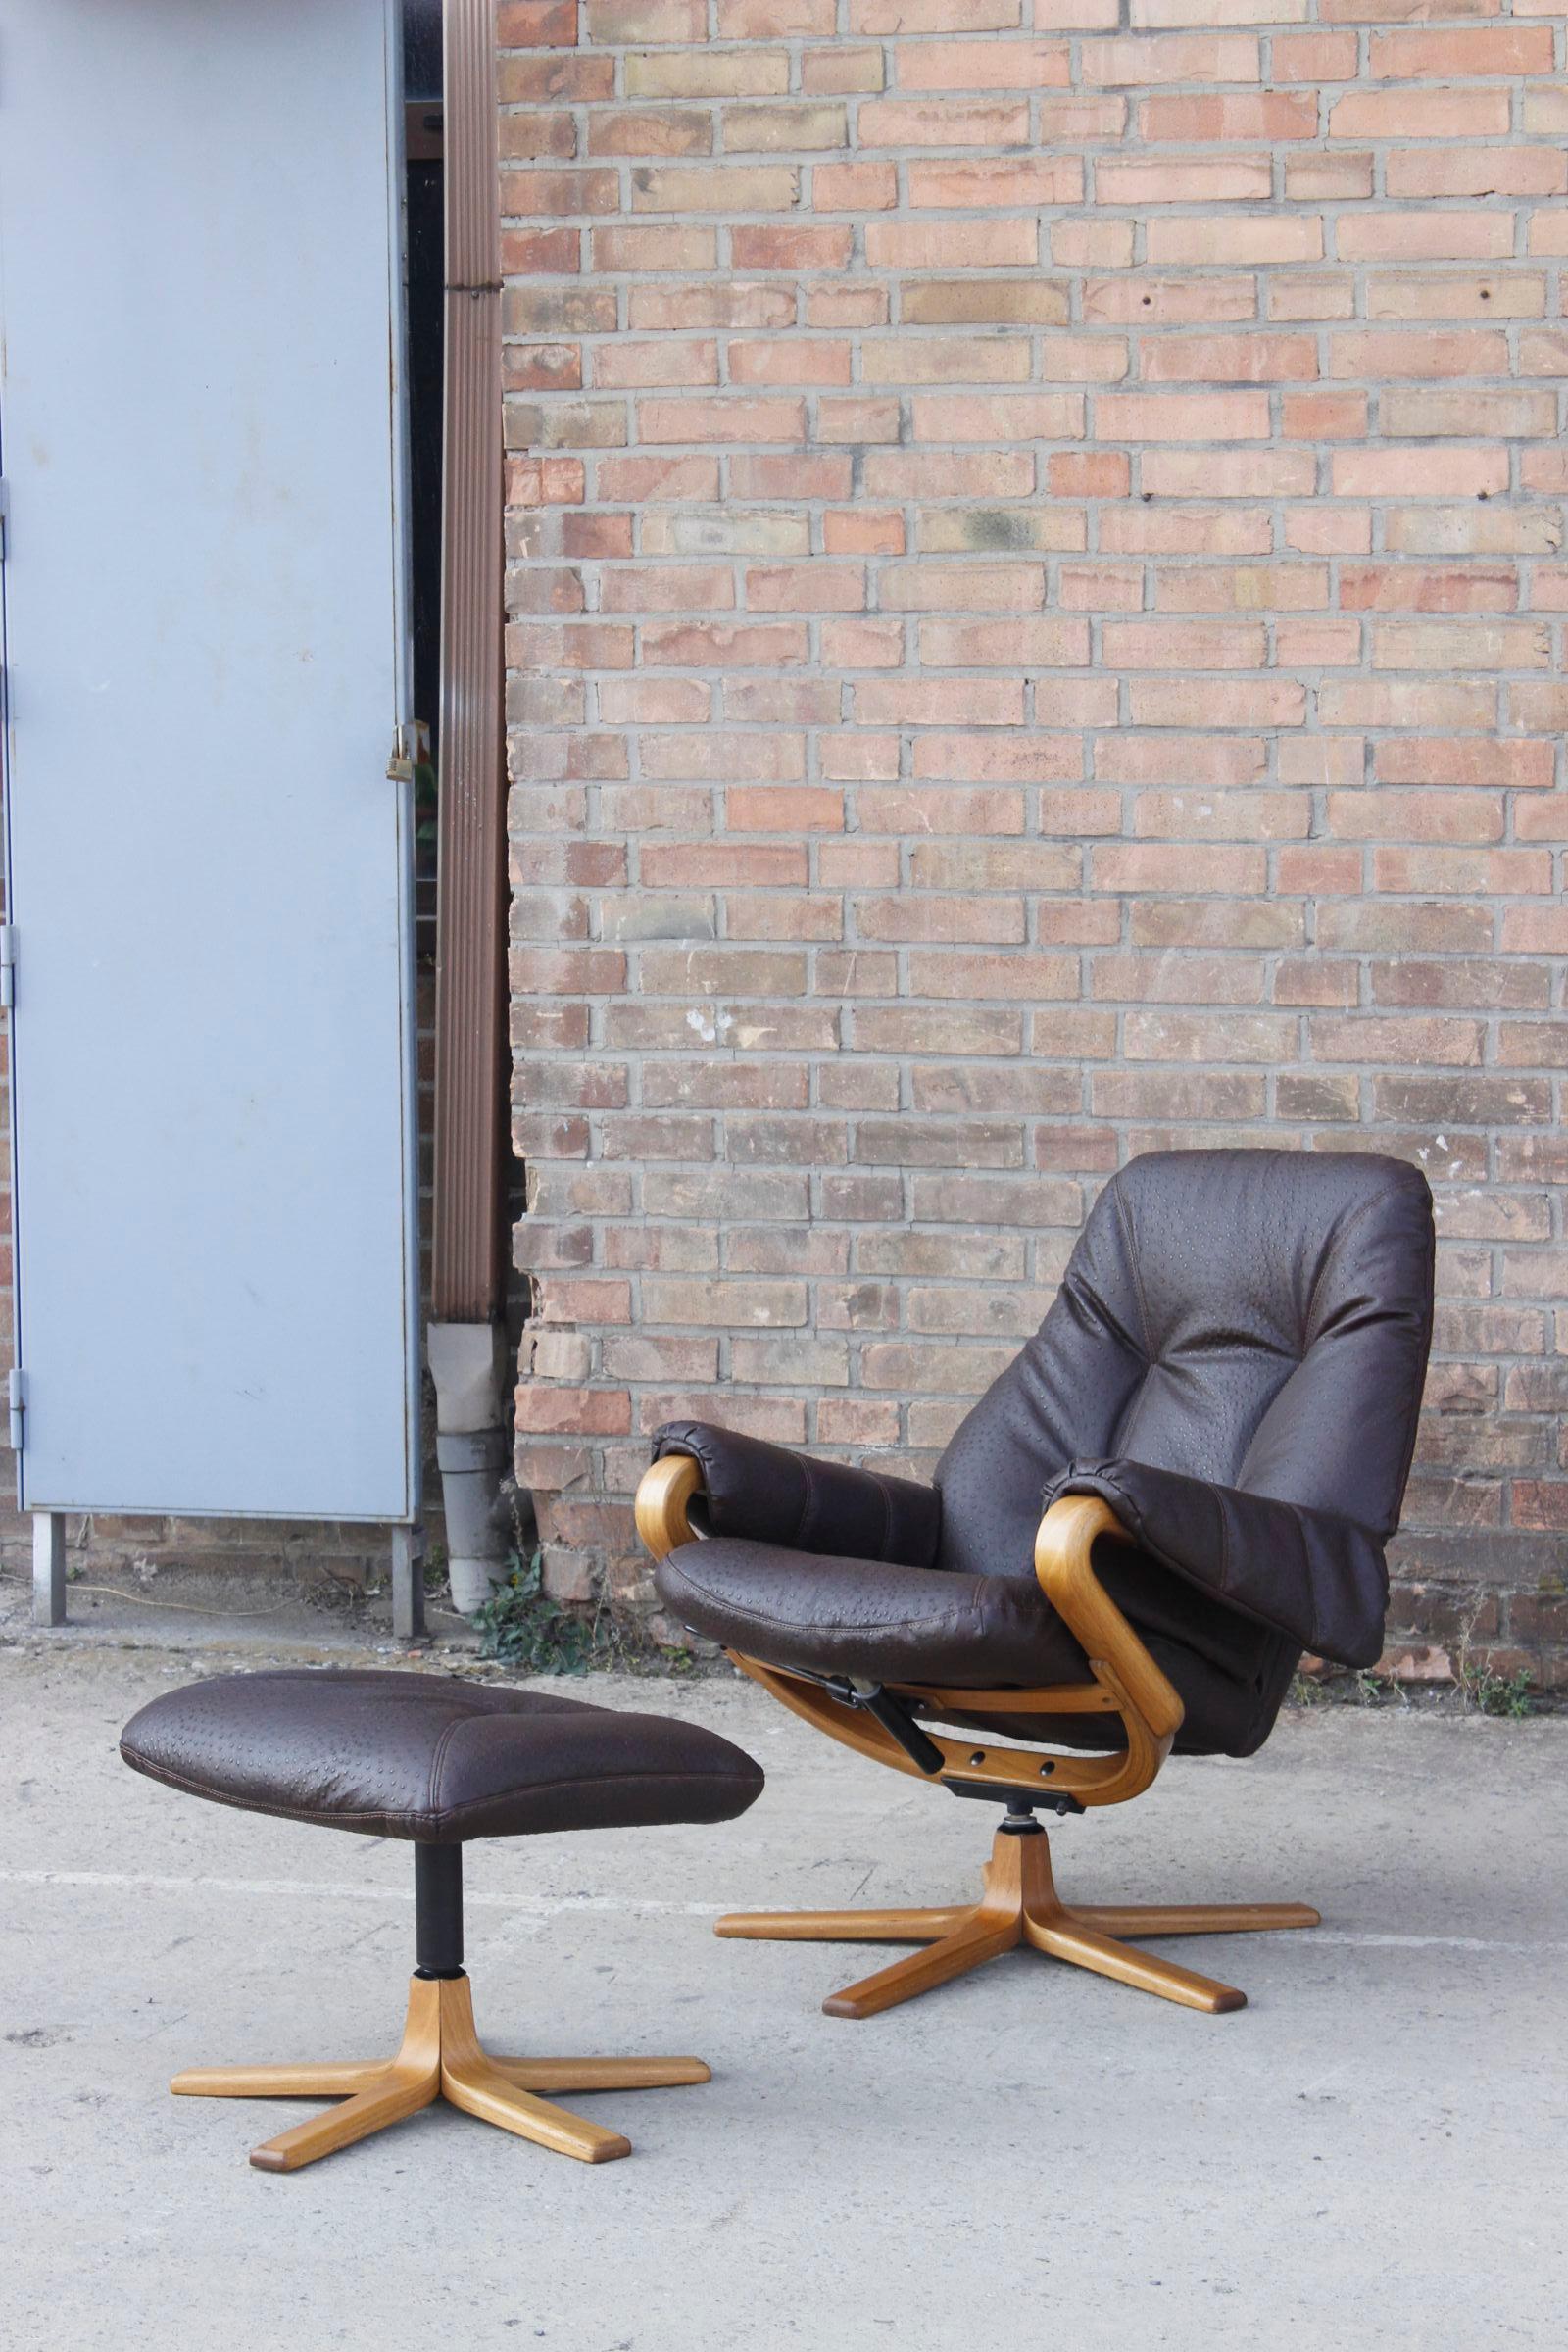 Chaise longue pivotante confortable avec ottoman, produite par Göte Möbler Suède dans les années 1960. Les pieds sont en bois courbé, une solide structure métallique assure le confort entre plusieurs positions sélectionnables avec le levier. Le